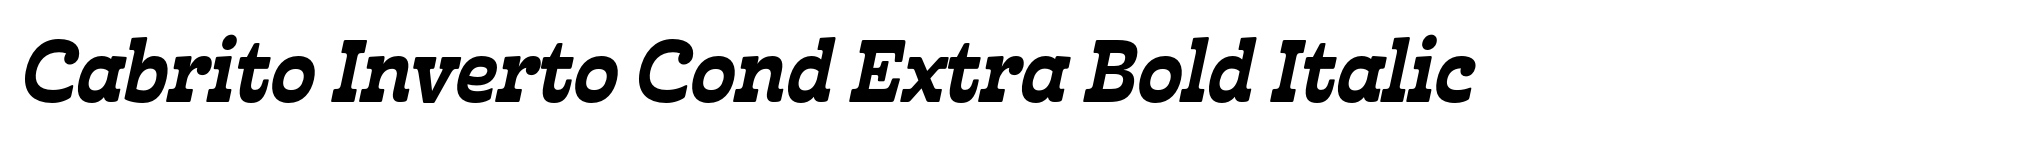 Cabrito Inverto Cond Extra Bold Italic image